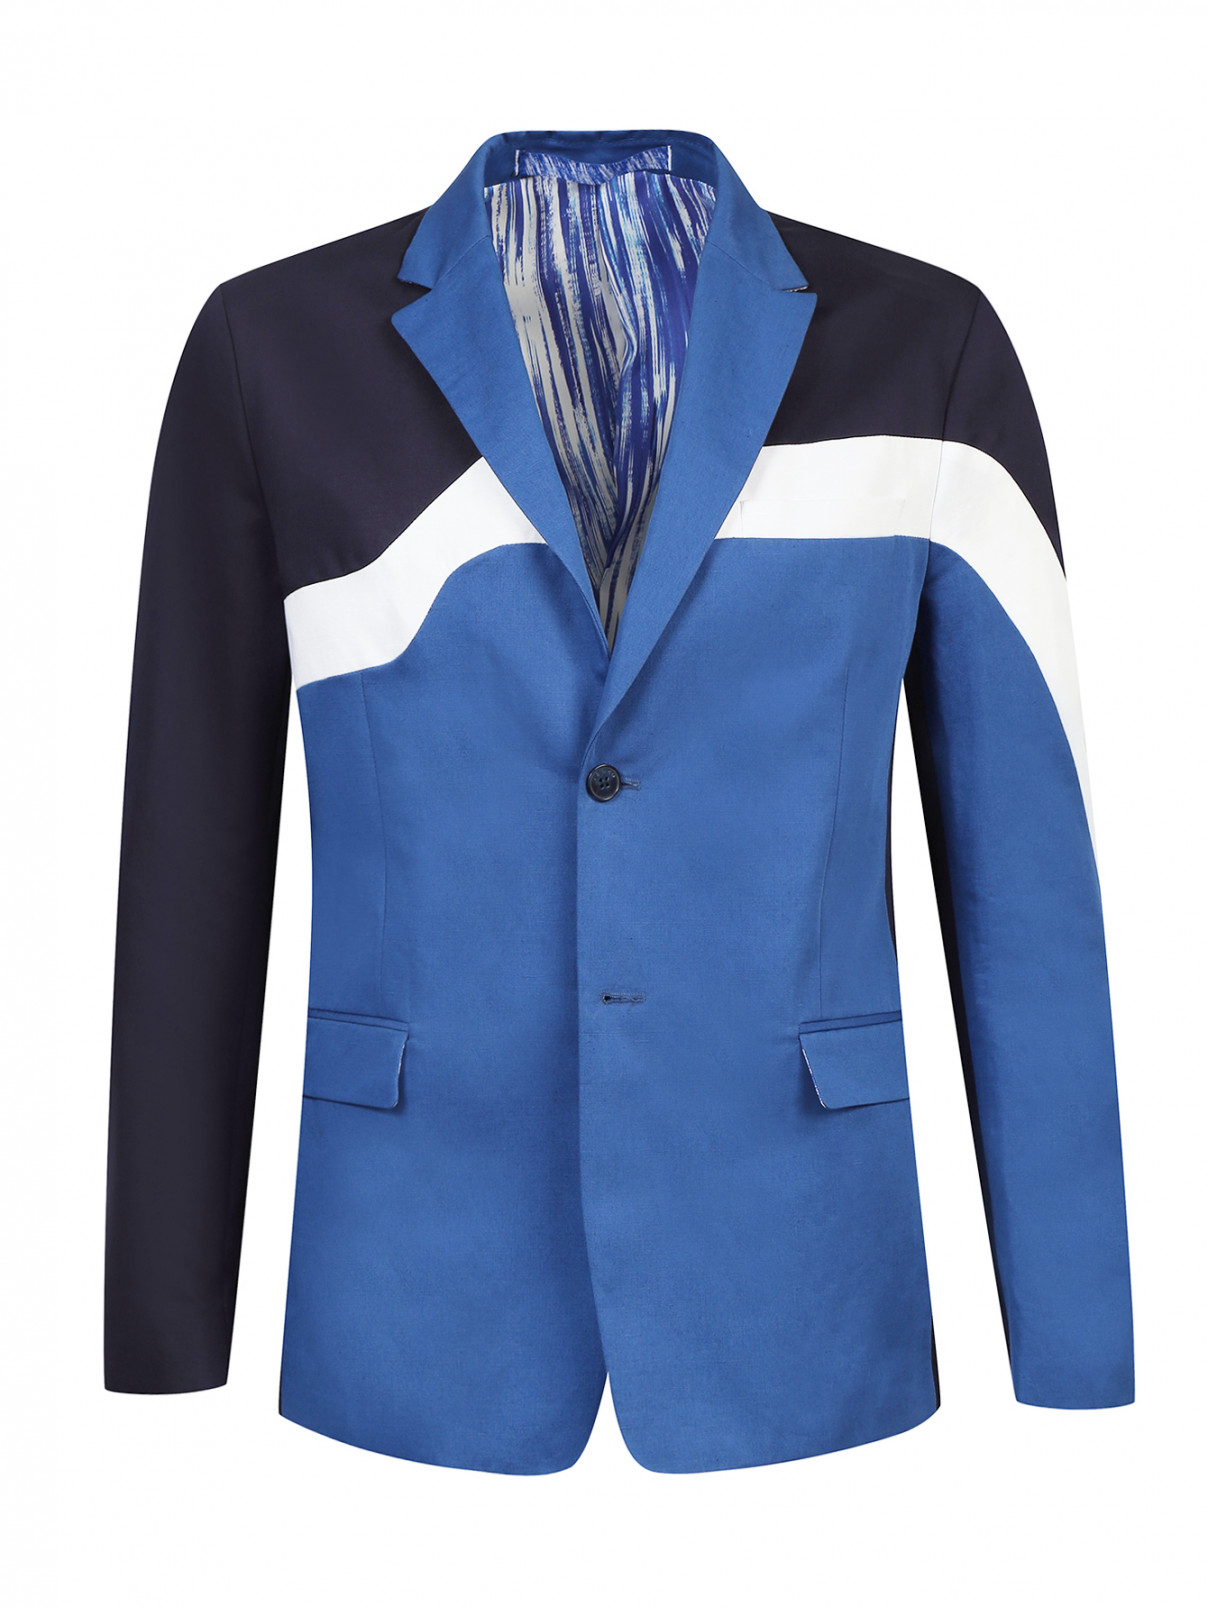 Пиджак из хлопка и льна с контрастными вставками Kenzo  –  Общий вид  – Цвет:  Синий